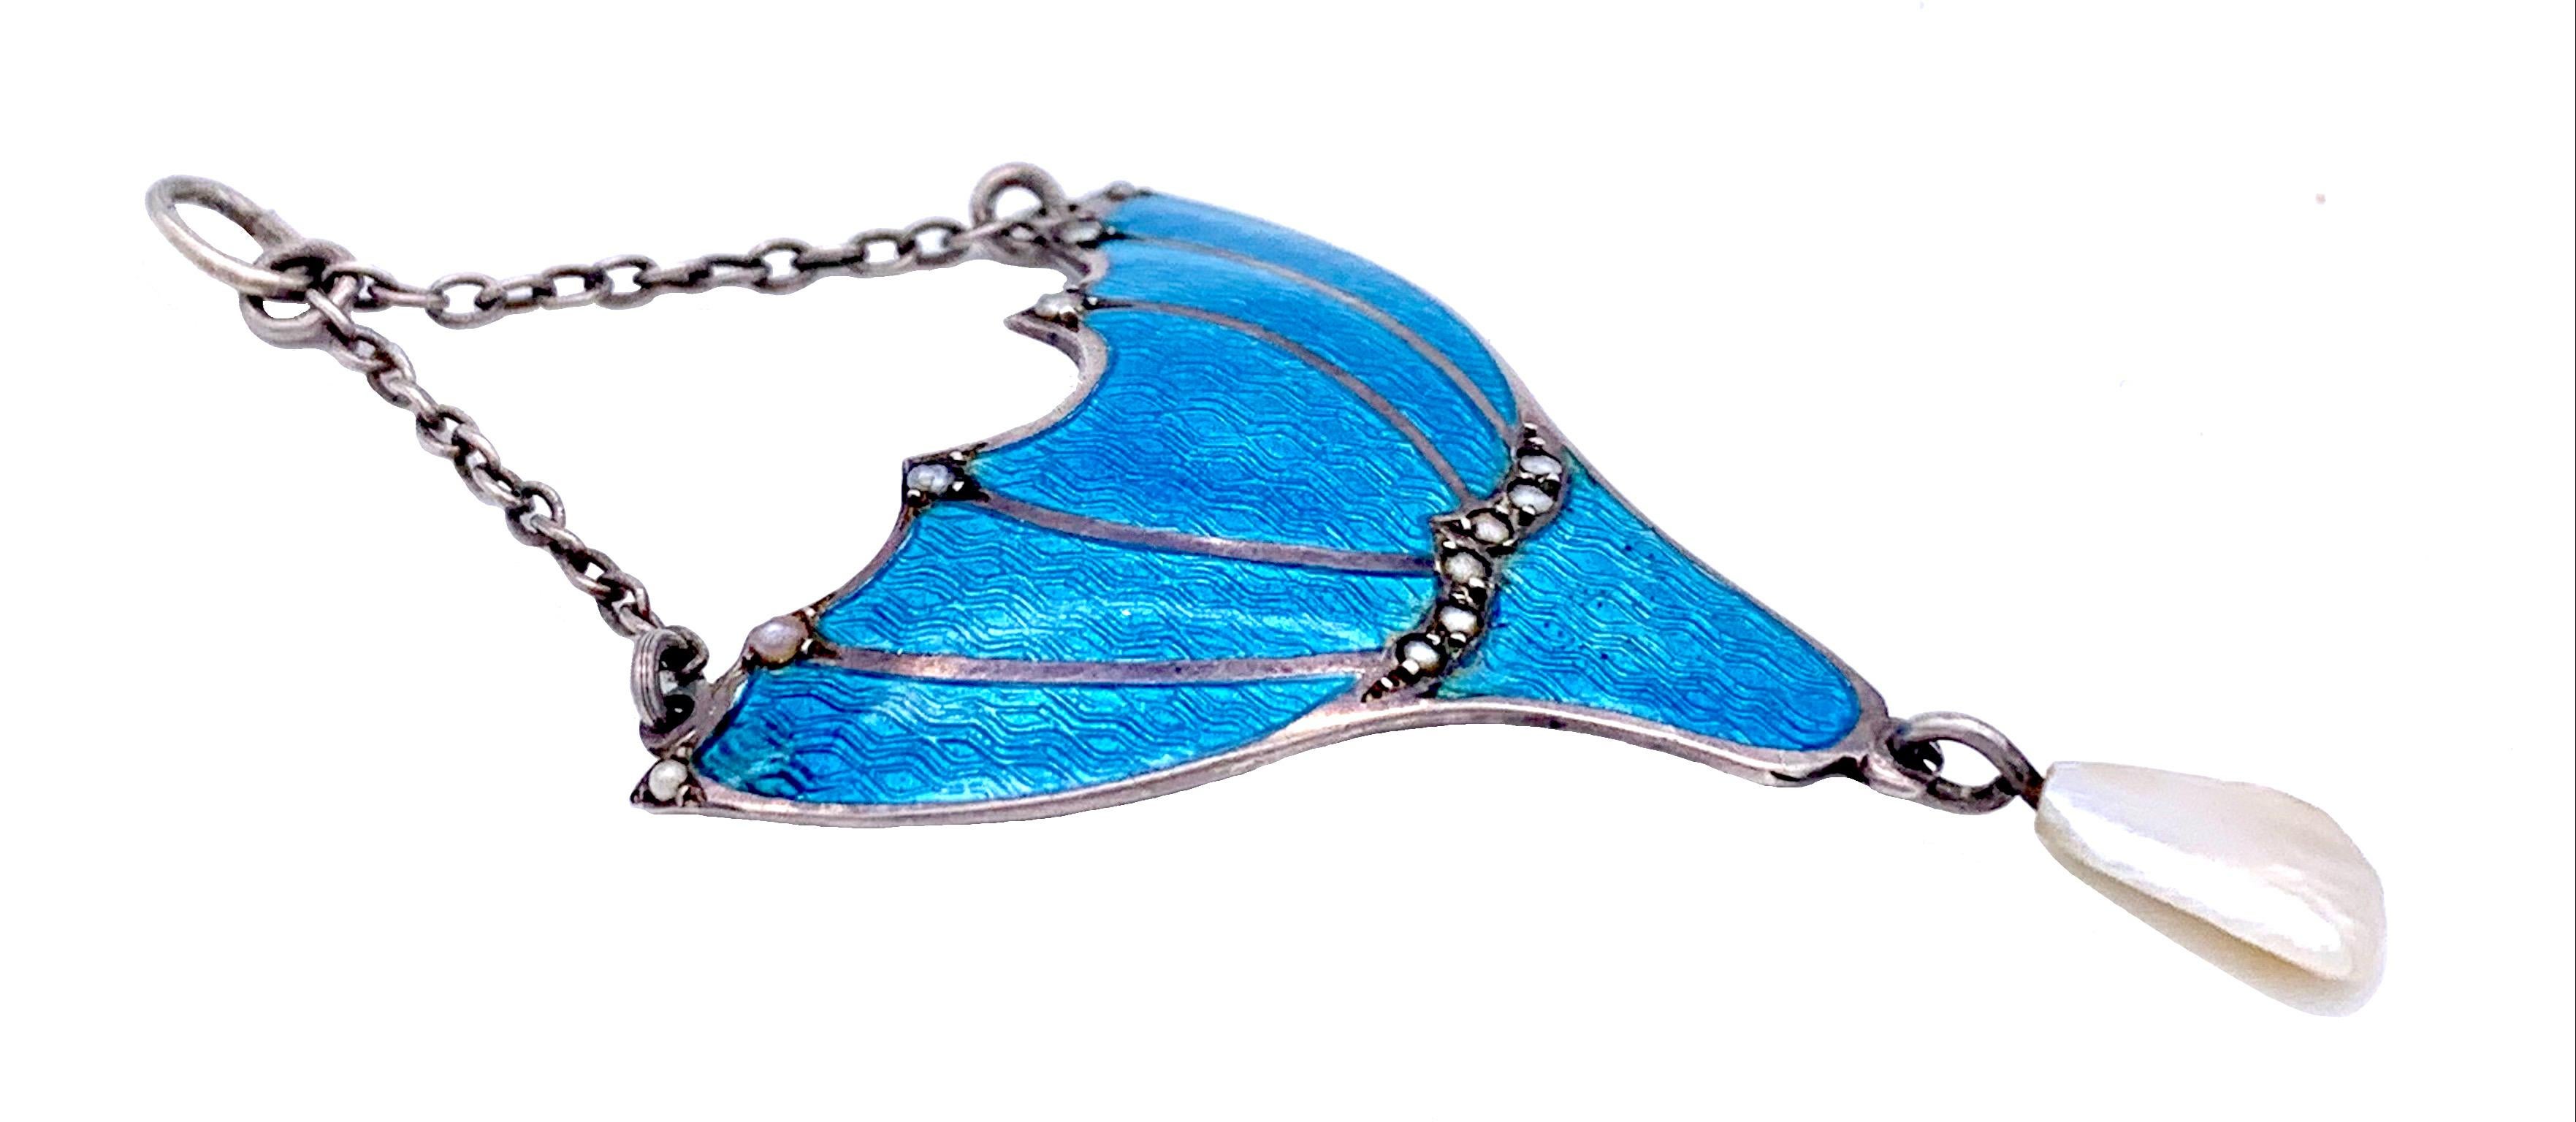 Ce pendentif Arts & Crafts est fabriqué à la main en argent sterling et recouvert d'un fin émail guilloché bleu intense présentant un motif de vagues. Ce charmant motif, qui rappelle une fleur, est agrémenté de petites perles naturelles orientales